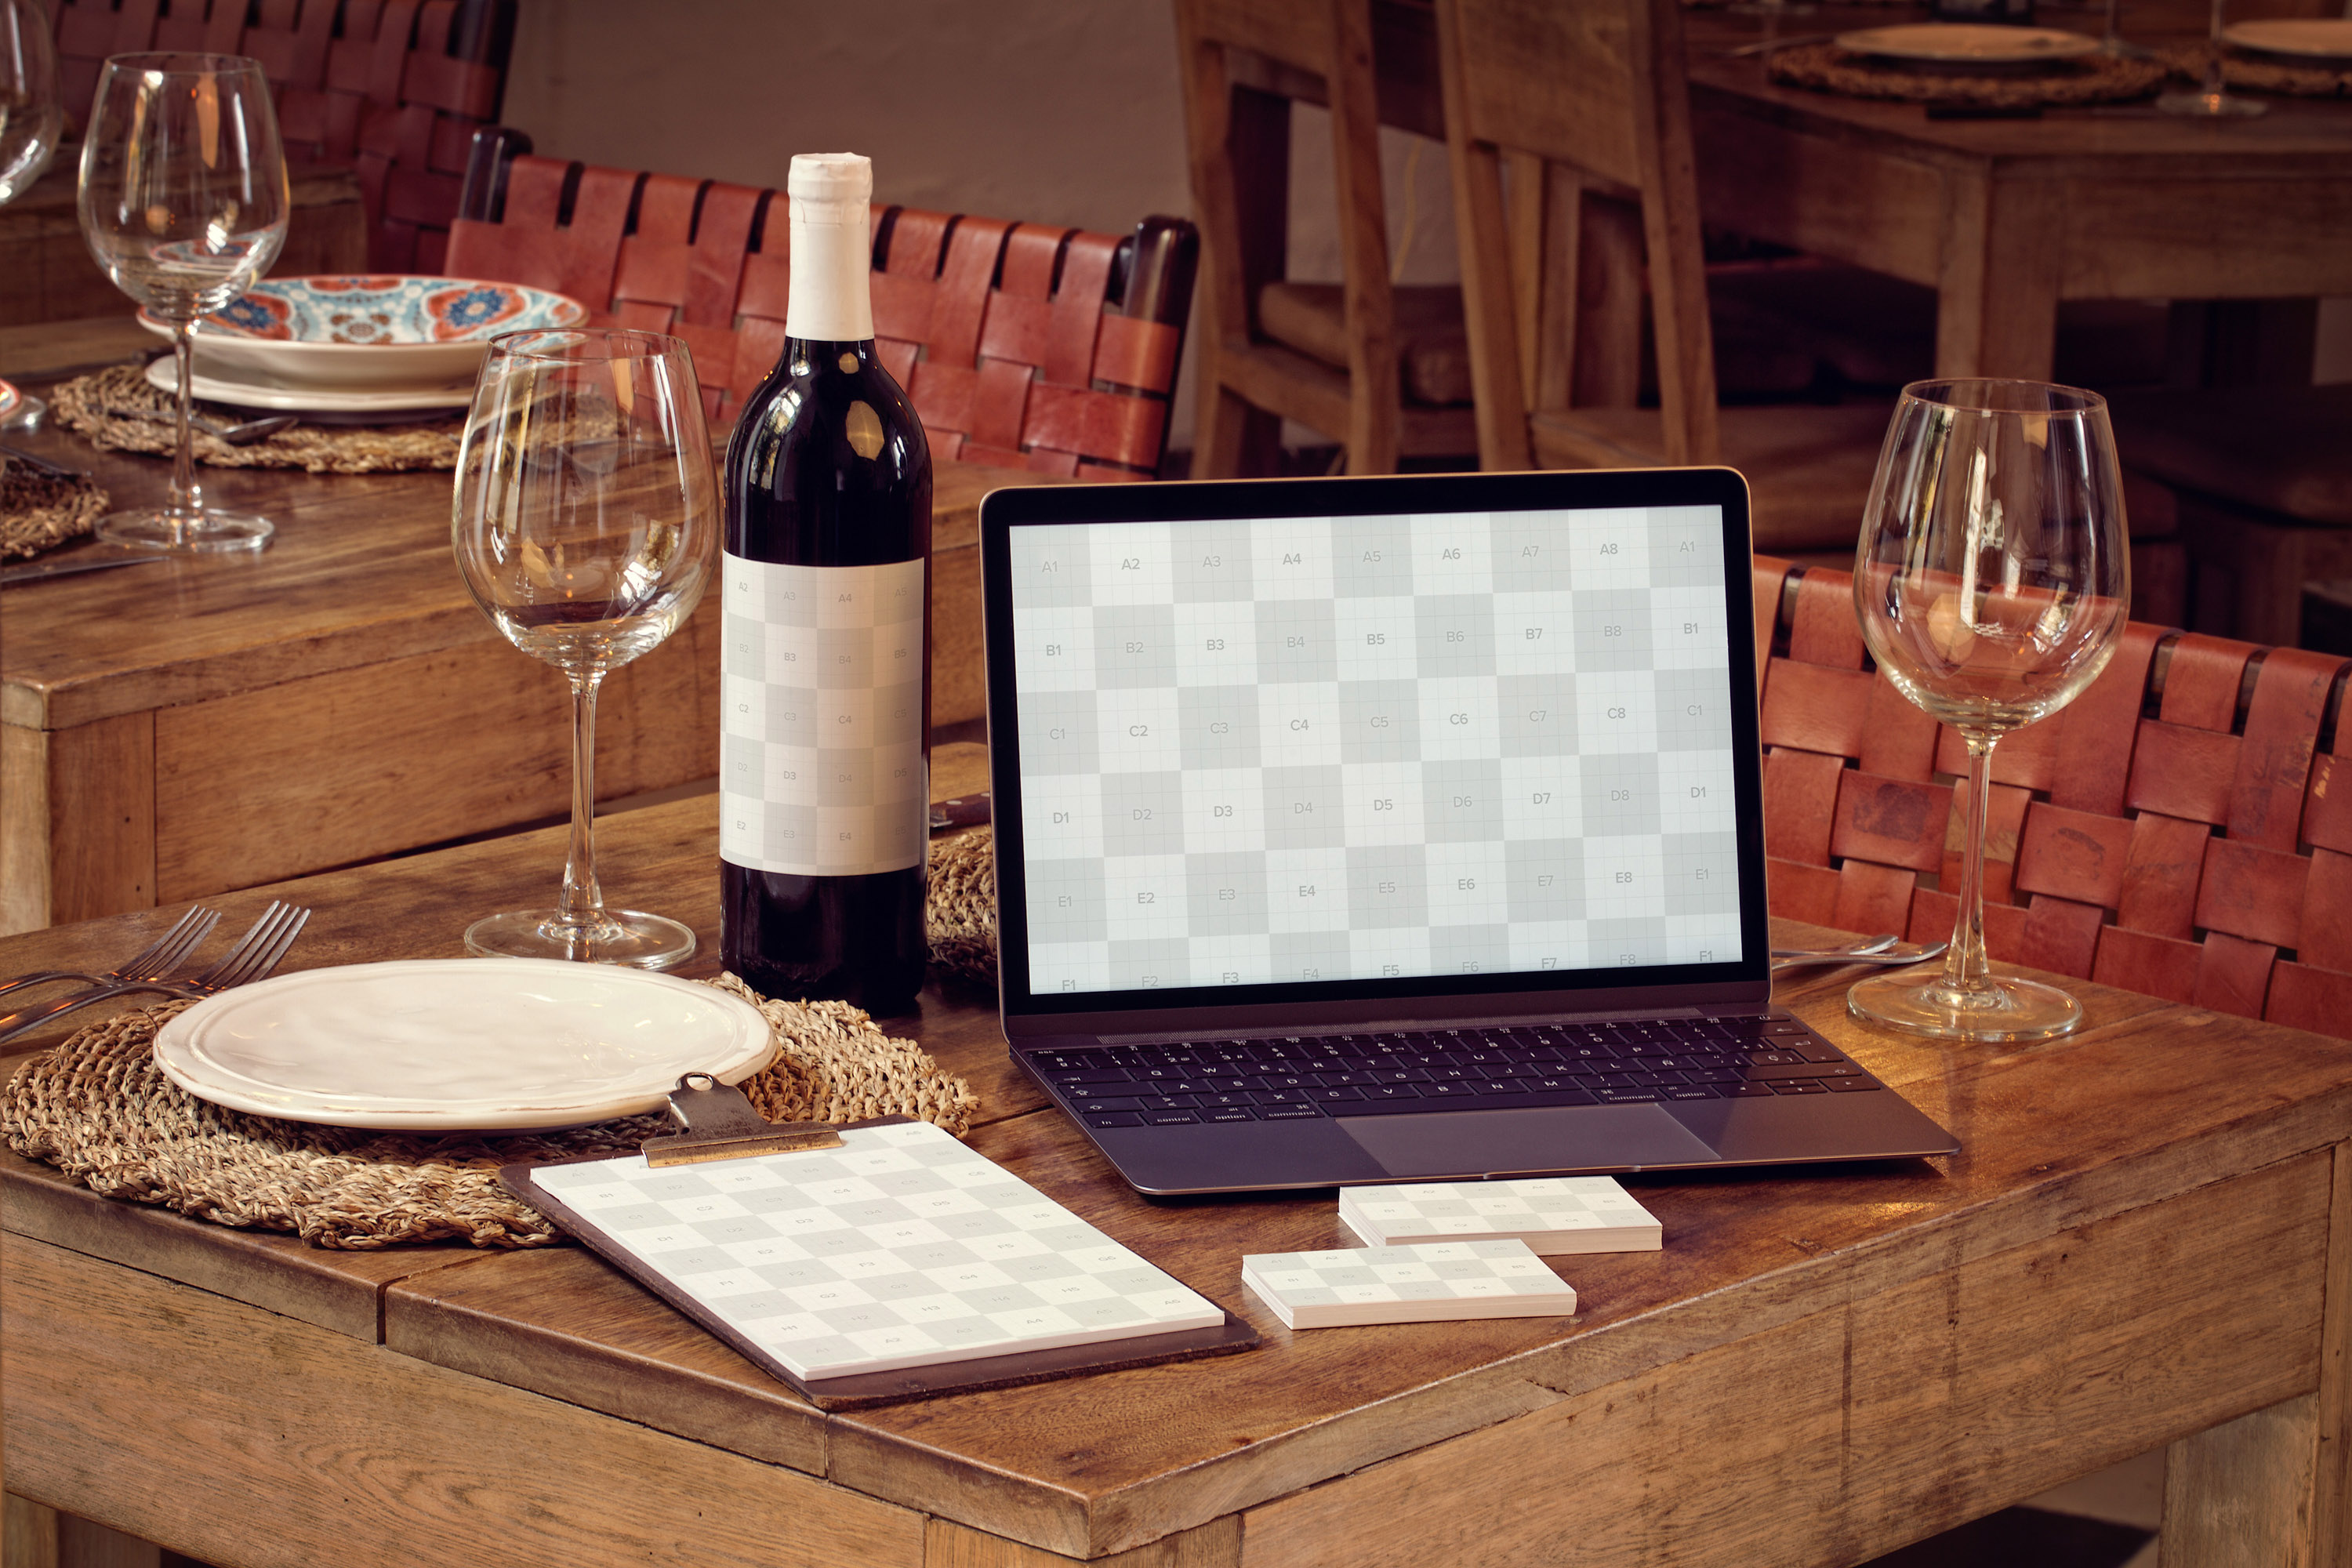 高级餐厅VI视觉设计酒瓶/MacBook/名片/菜单样机模板 Wine Bottle, MacBook, Business Cards and Menu Mockup插图(1)